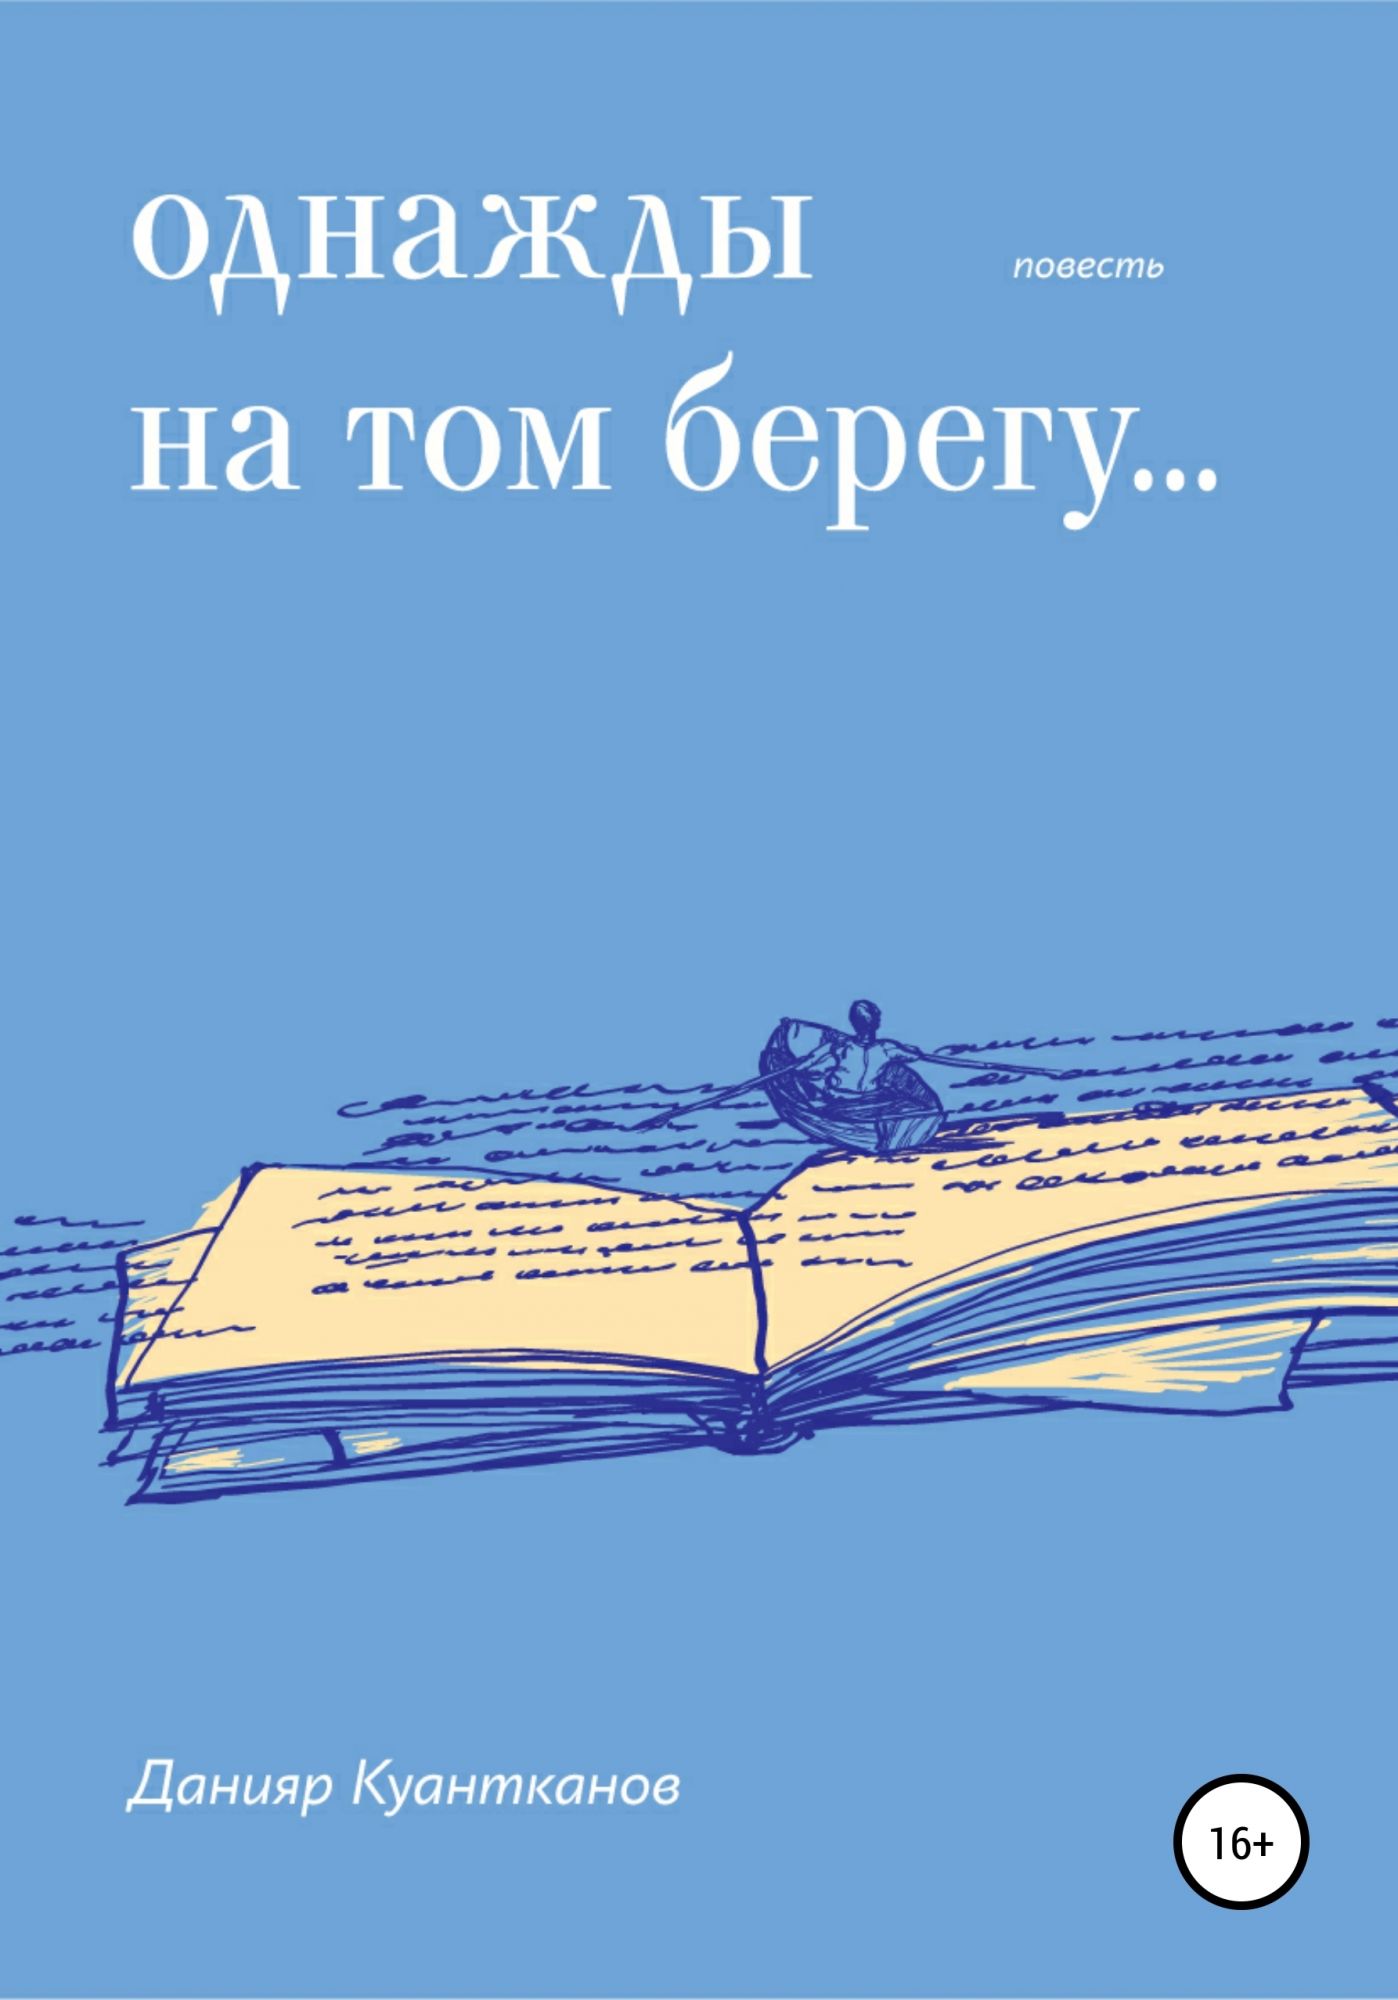 Читать берега жизни. На том берегу книга. Однажды в библиотеке. Книга однажды на д. Однажды в стройке книга.